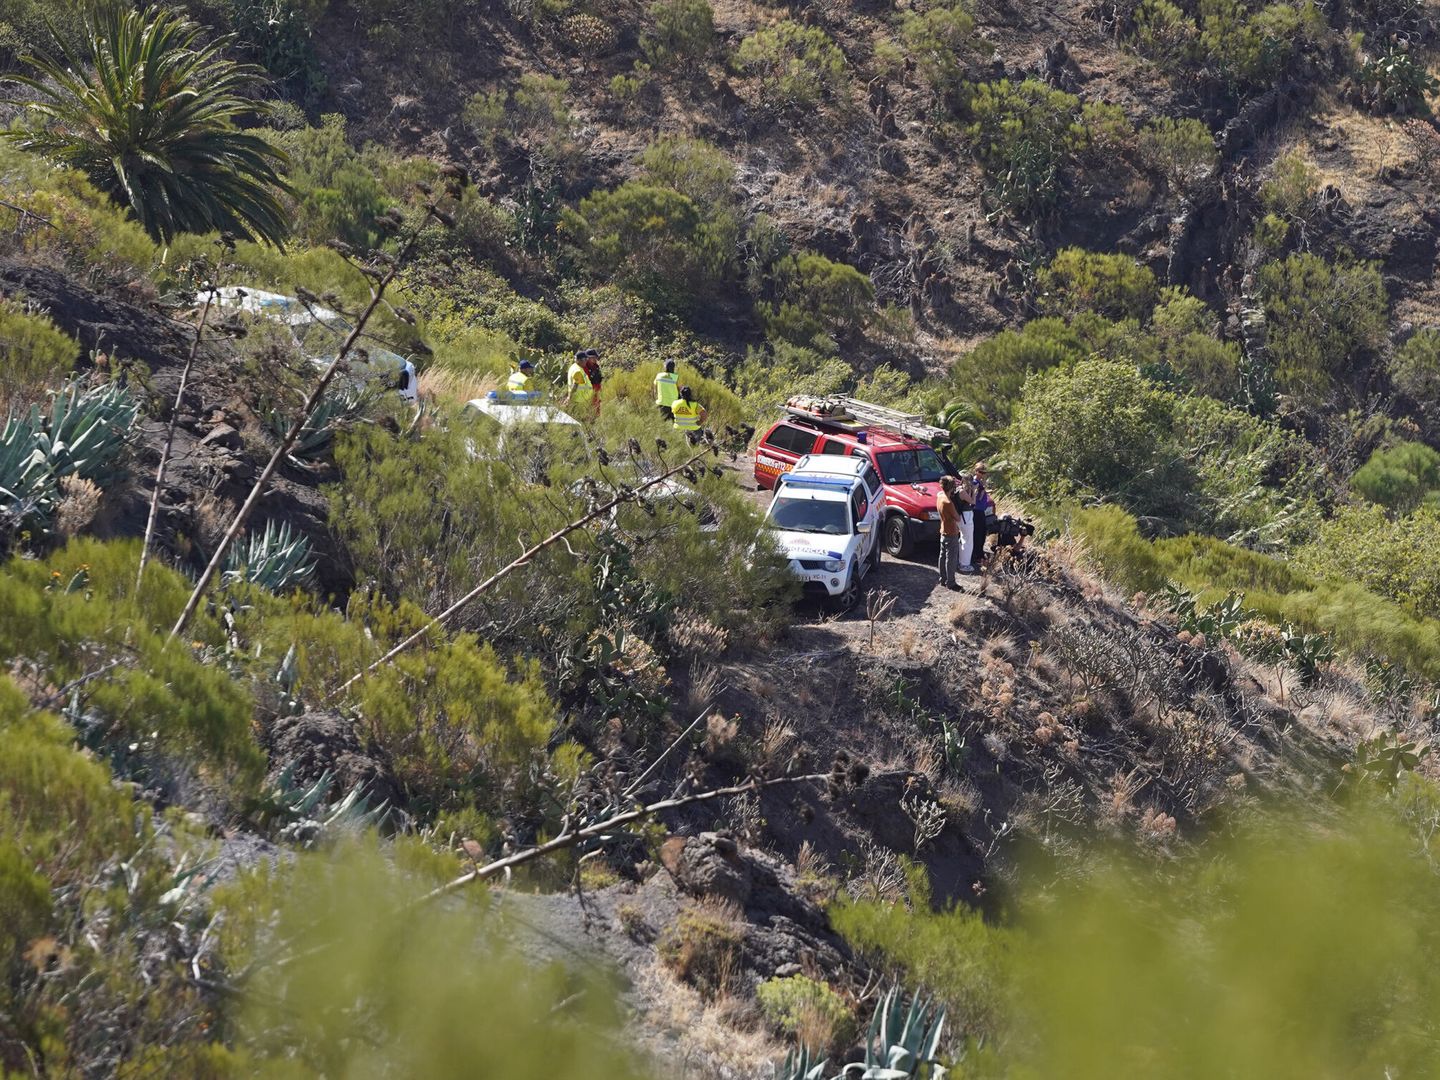 La Guardia Civil llevó a cabo una búsqueda de Jay Slater en la zona de su desaparición, pero no lograron encontrarlo (Foto: Europa Press/Canarias)